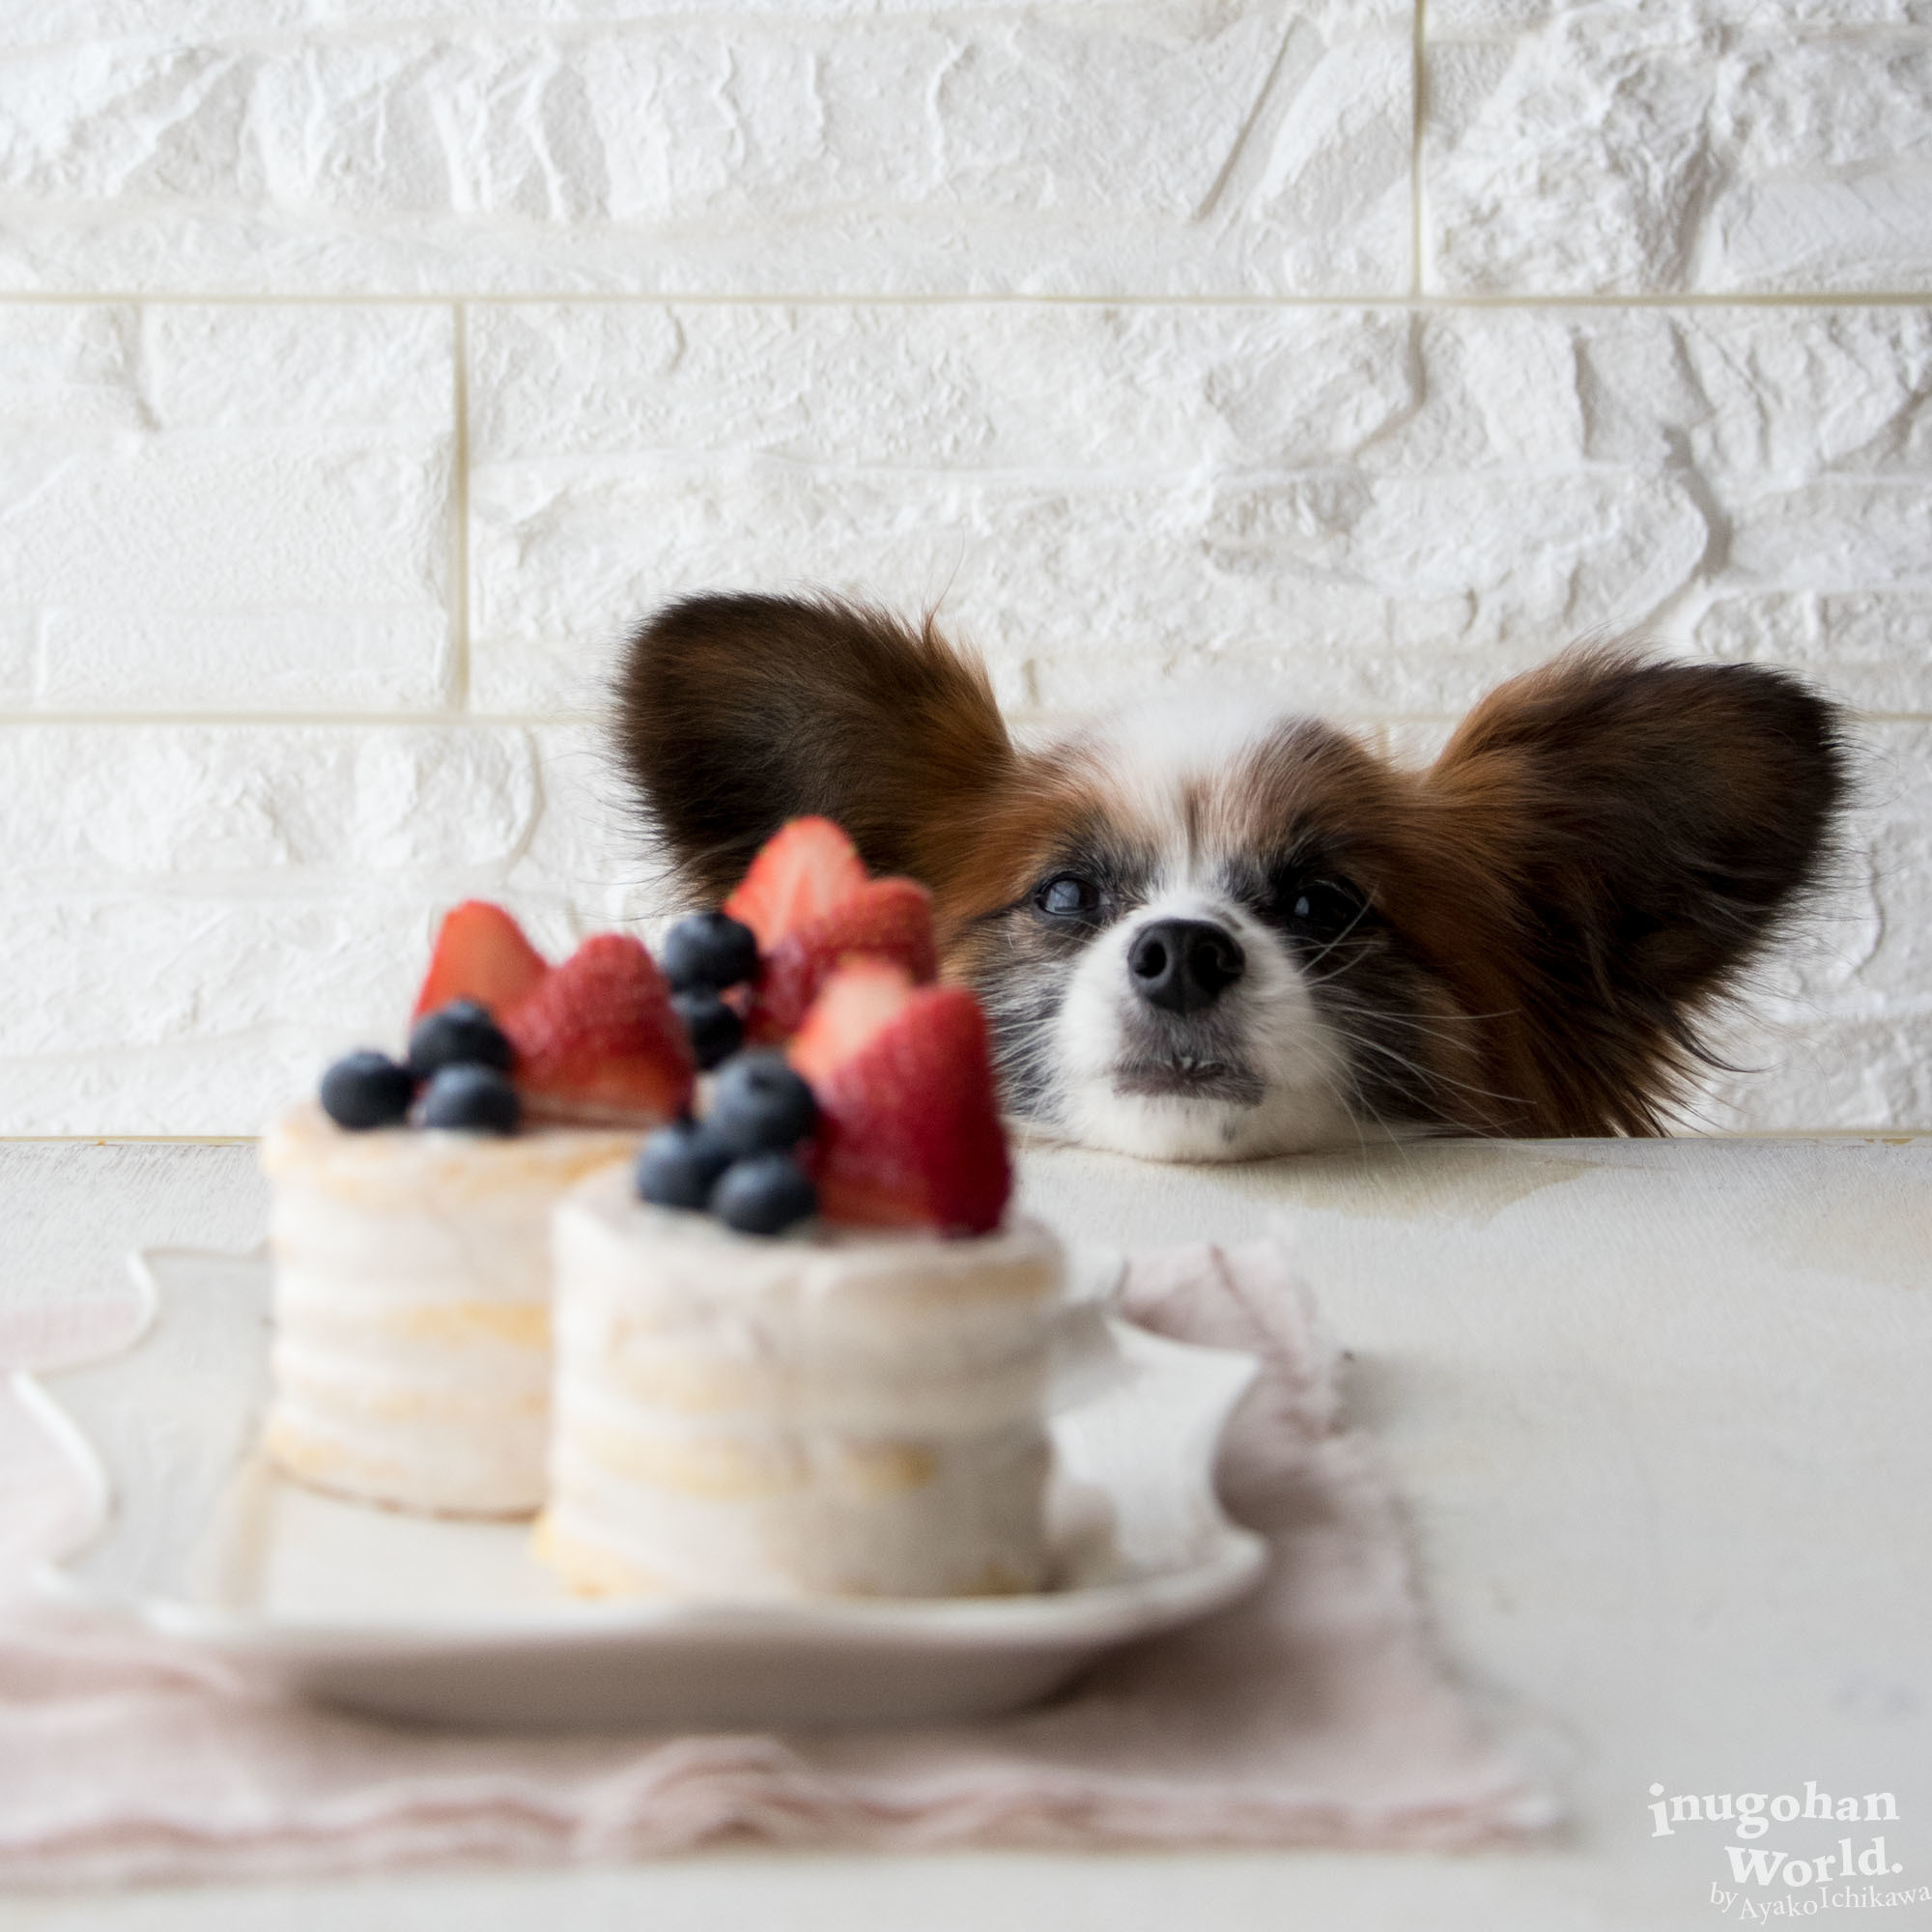 フライパンで作るミニネイキッドケーキ 手作り犬おやつレシピ 犬ごはん先生いちかわあやこ Official Web Site